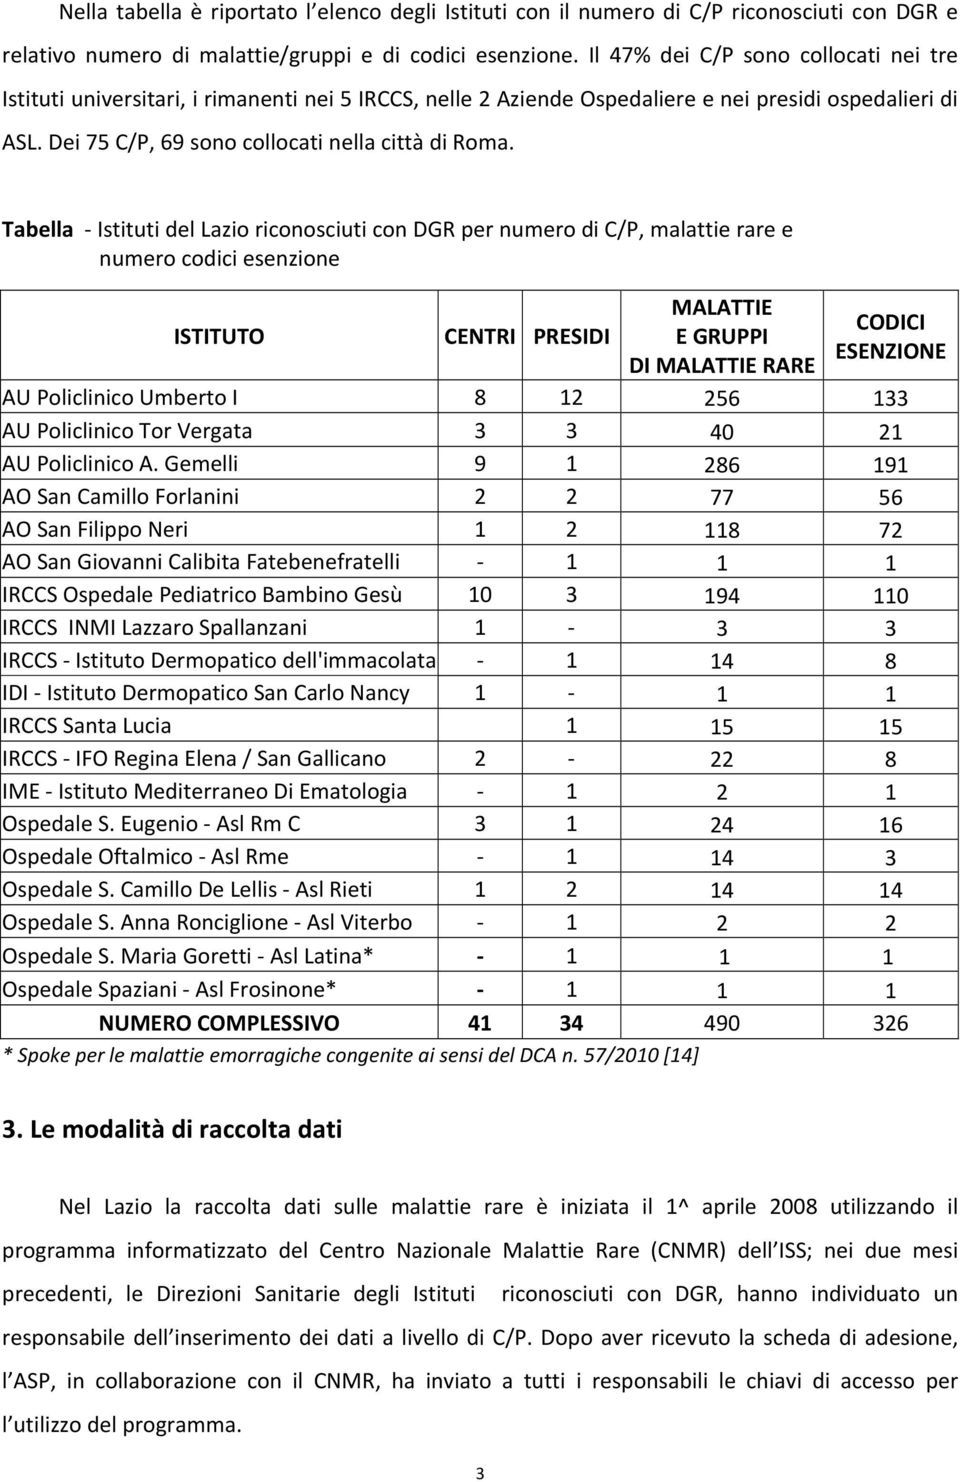 Tabella Istituti del Lazio riconosciuti con DGR per numero di C/P, malattie rare e numero codici esenzione ISTITUTO CENTRI PRESIDI MALATTIE CODICI E GRUPPI ESENZIONE DI MALATTIE RARE AU Policlinico